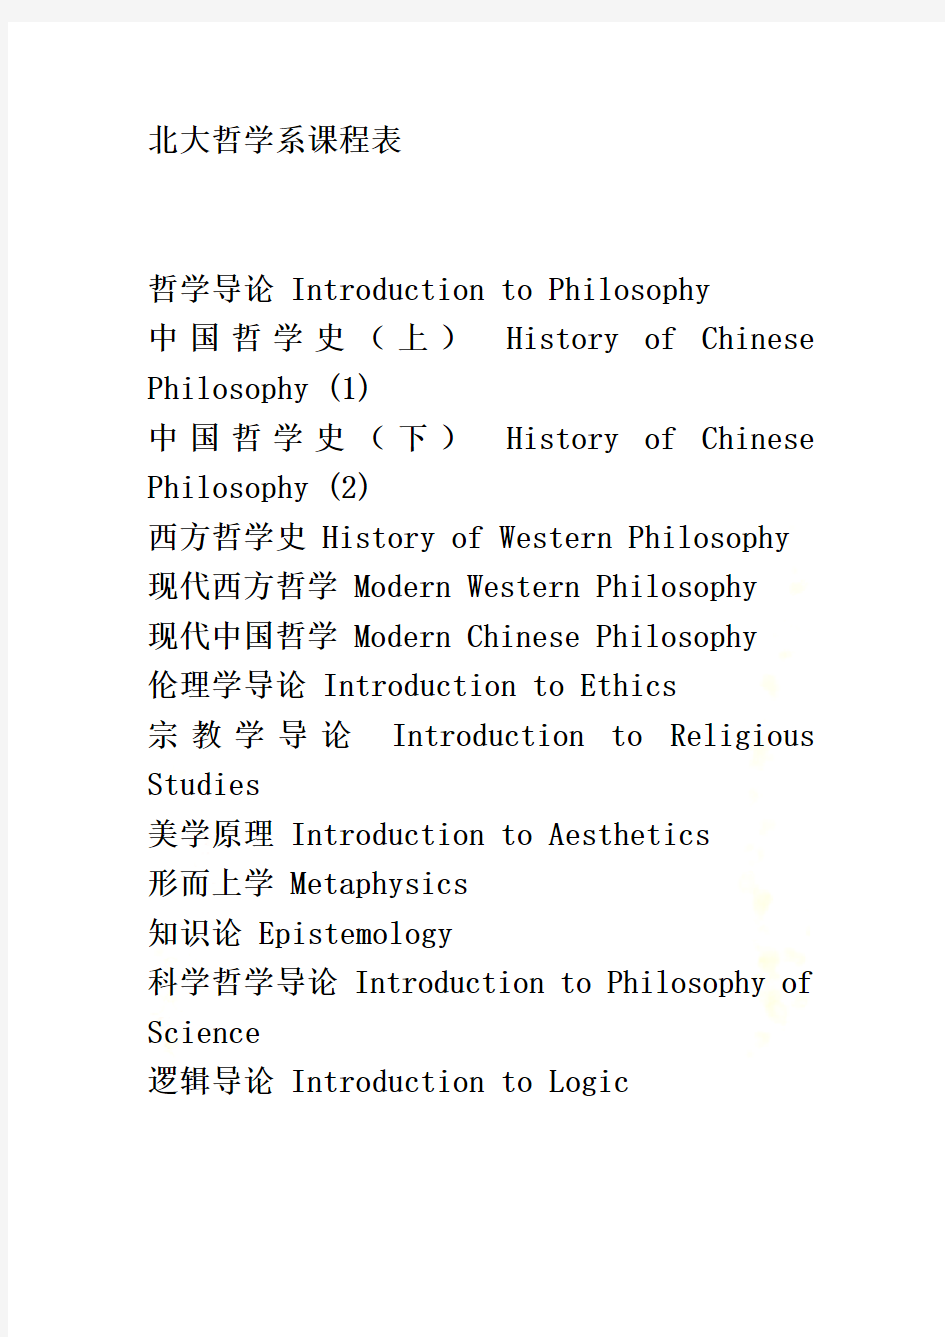 北京大学、哈佛大学哲学系课程表